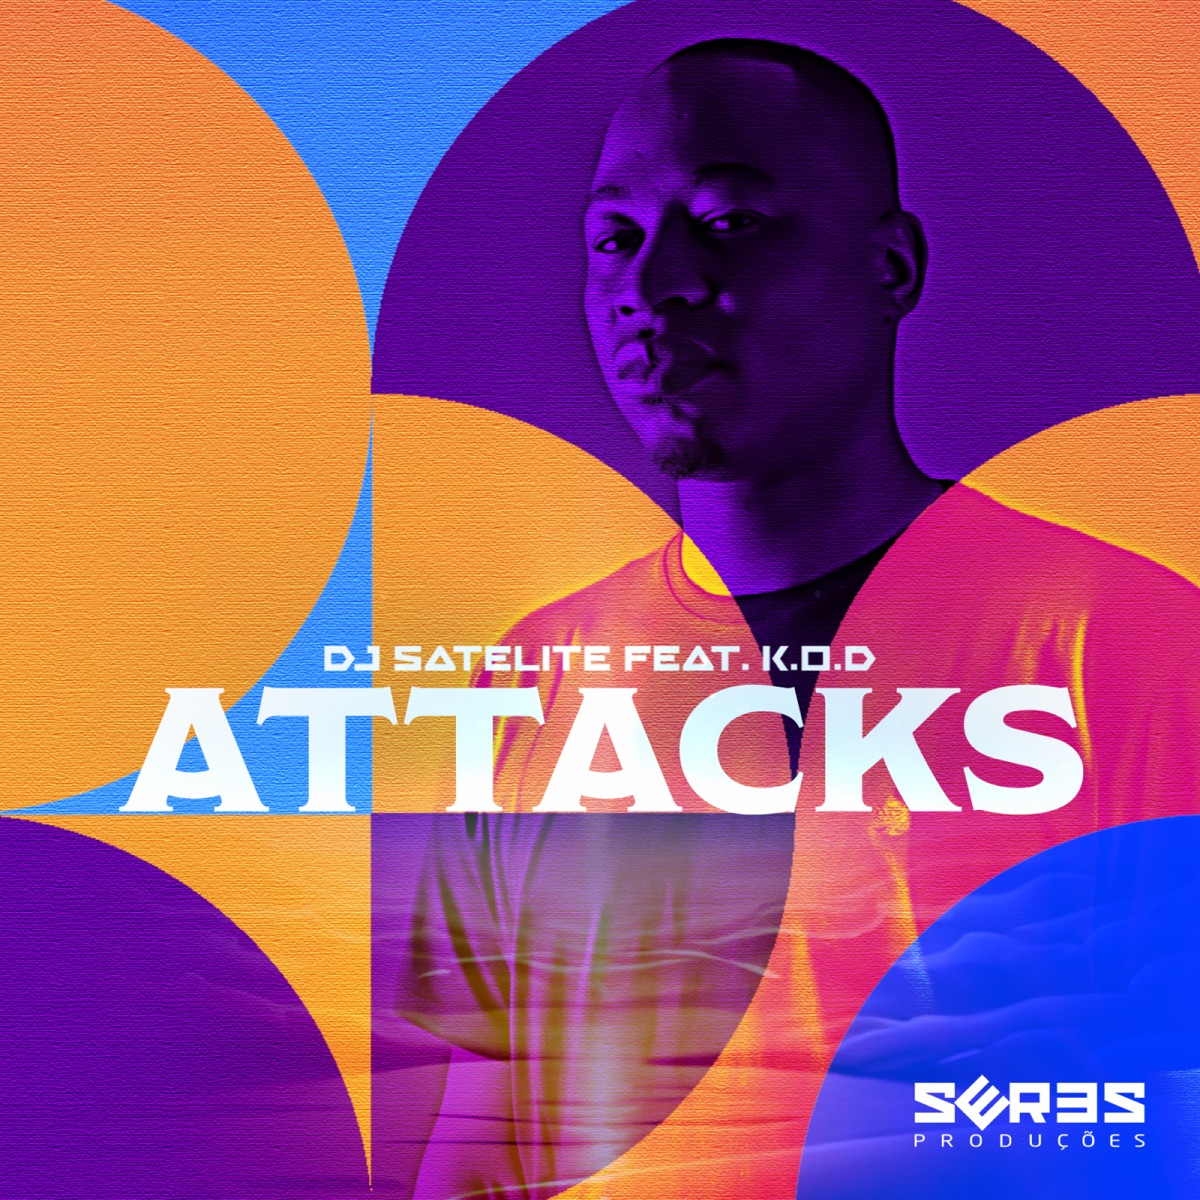 MP3: DJ Satelite Ft. K.O.D. – Attacks